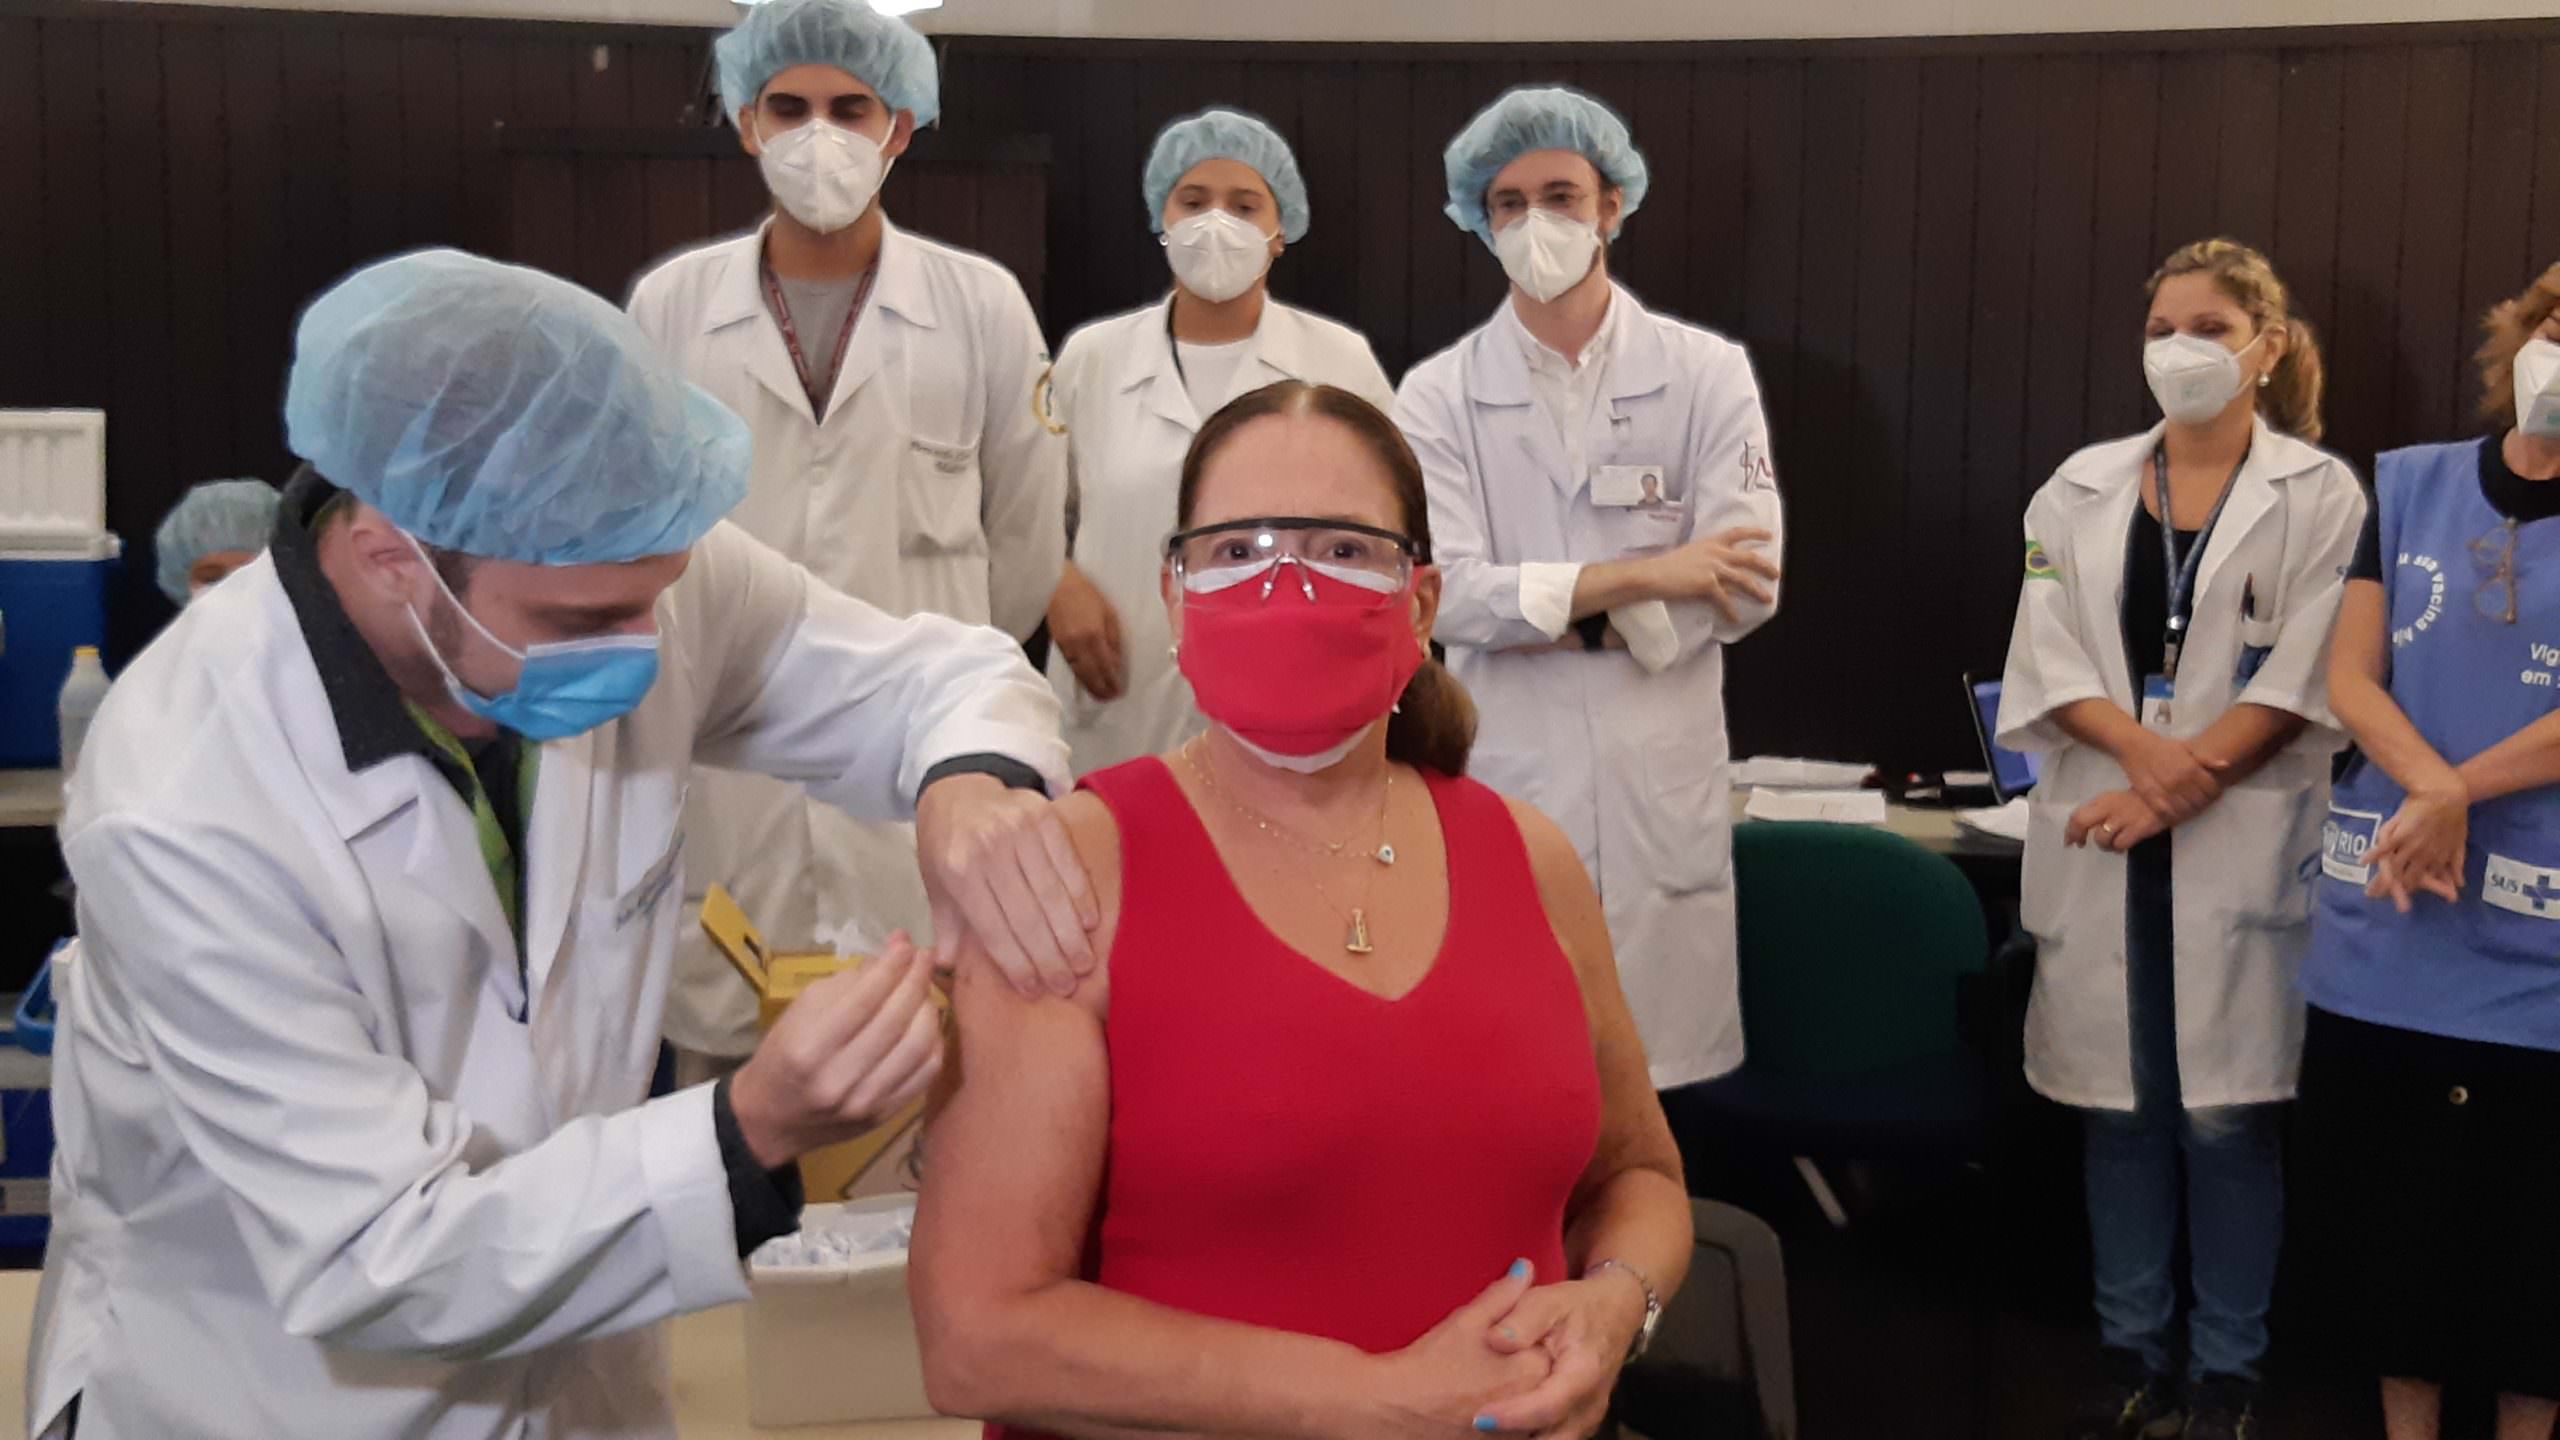 Susana Vieira, Evandro Mesquita e Ritchie são vacinados contra covid-19